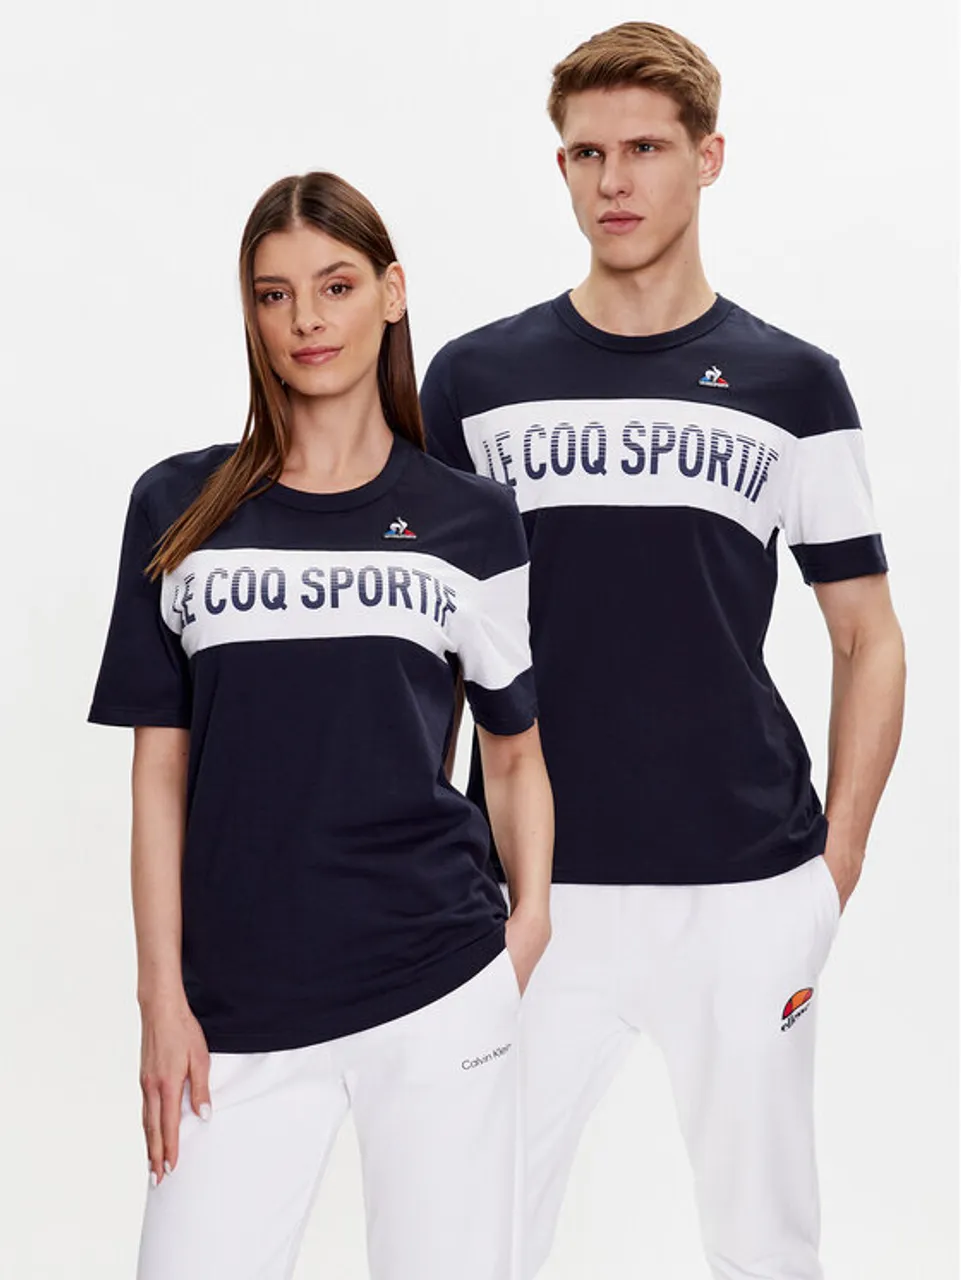 Le Coq Sportif T-Shirt Unisex 2310360 Dunkelblau Regular Fit